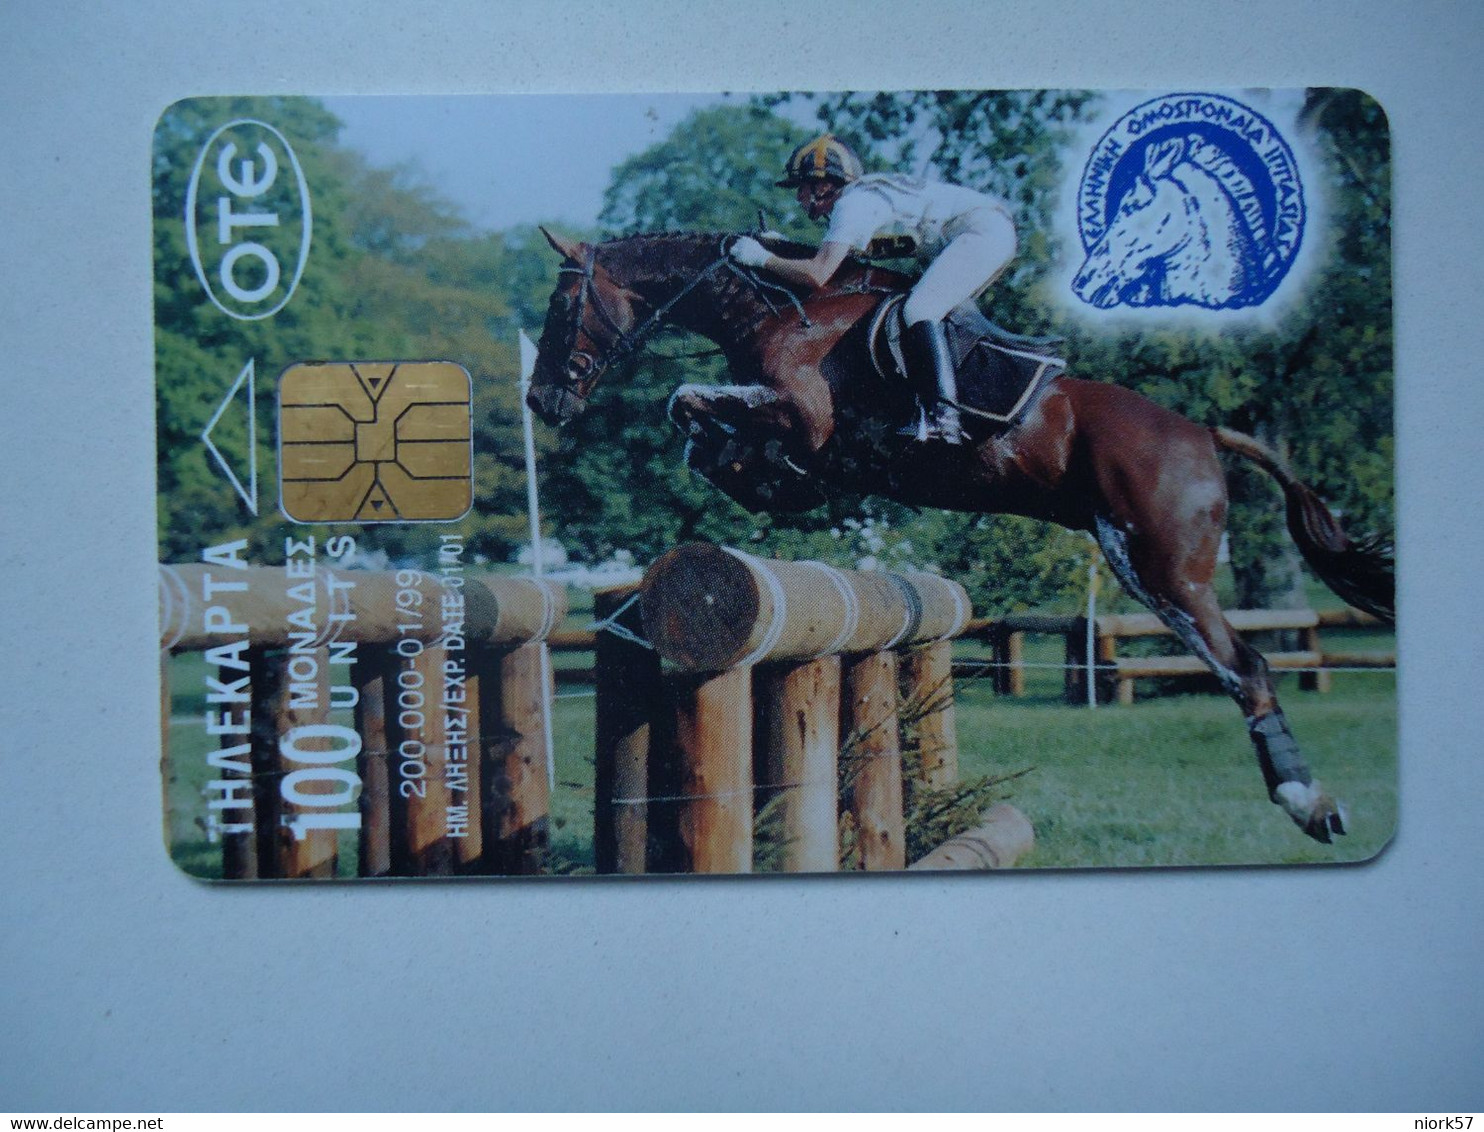 GREECE    USED   CARDS  HORSES - Pferde